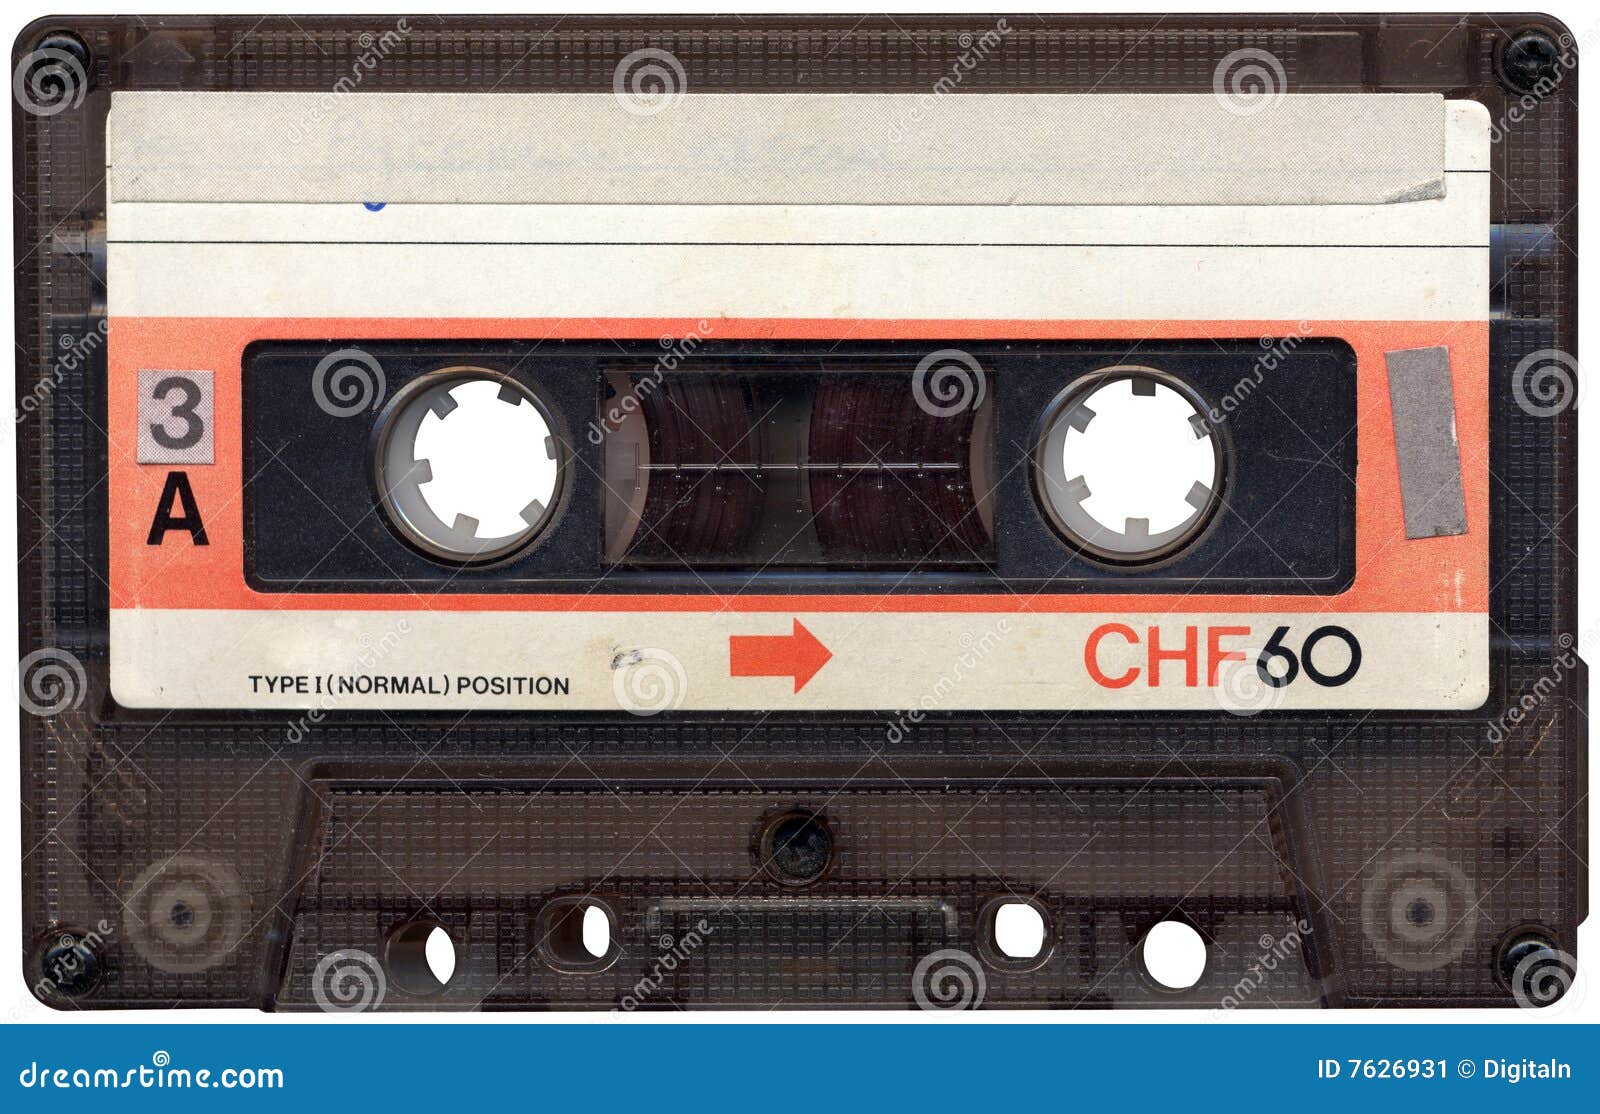 retro cassette tape